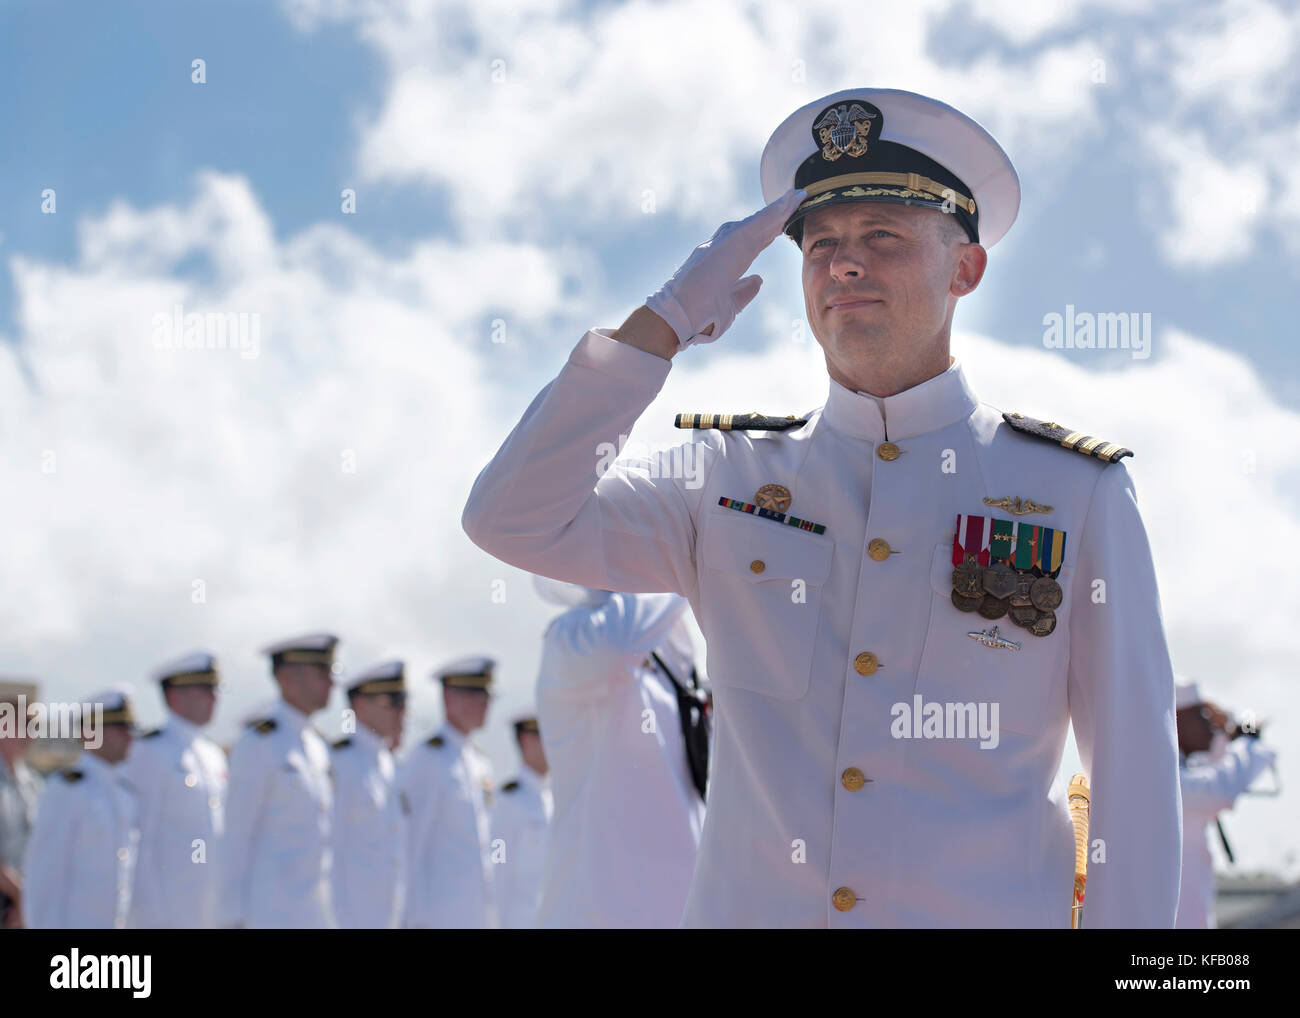 U.s. navy kommandierender Offizier David Cox ist an Bord der US-Marine los angeles-Klasse schnell-Angriffs-U-Boot uss Louisville während eines Change-of-Befehl Zeremonie am Joint Base Pearl Harbor - hickam Oktober 20, 2017 in Pearl Harbor, Hawaii geleitet. (Foto von Michael Lee über planetpix) Stockfoto